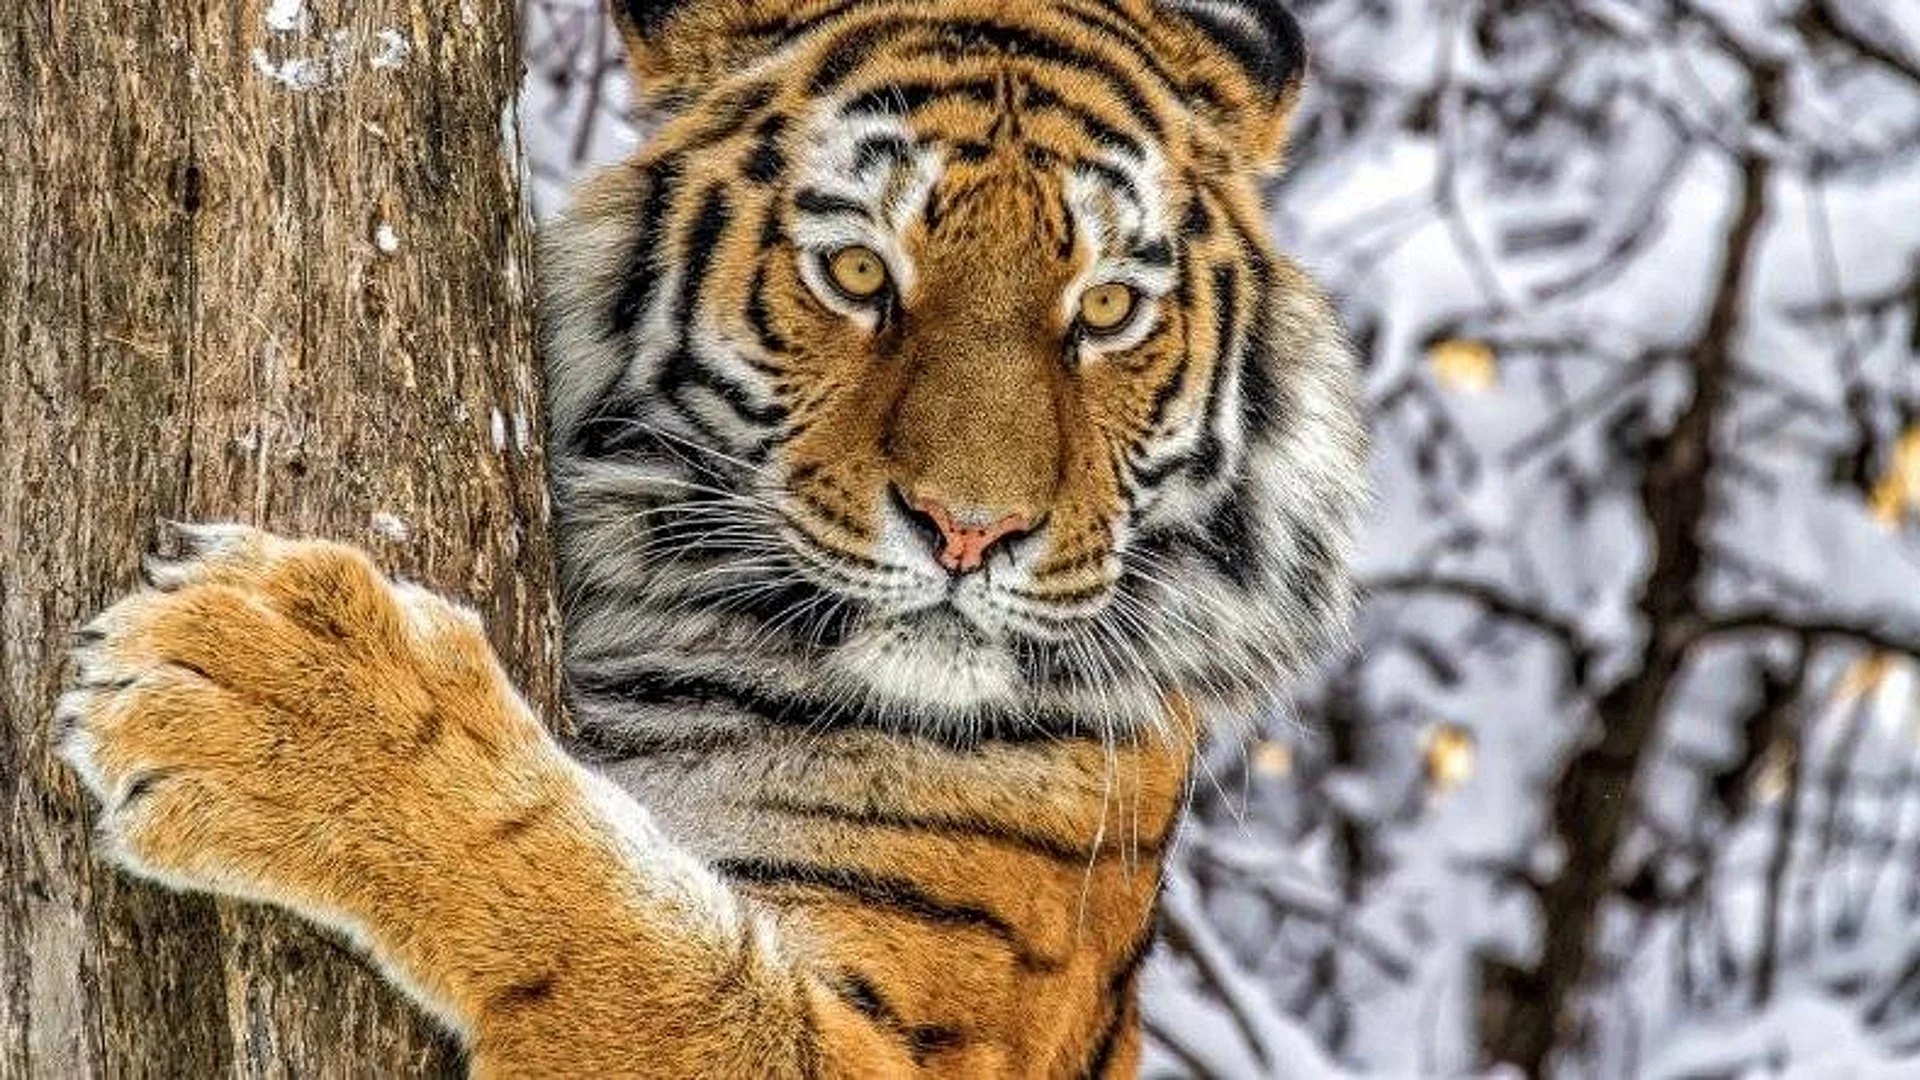 Tiger on Tree Wallpaper